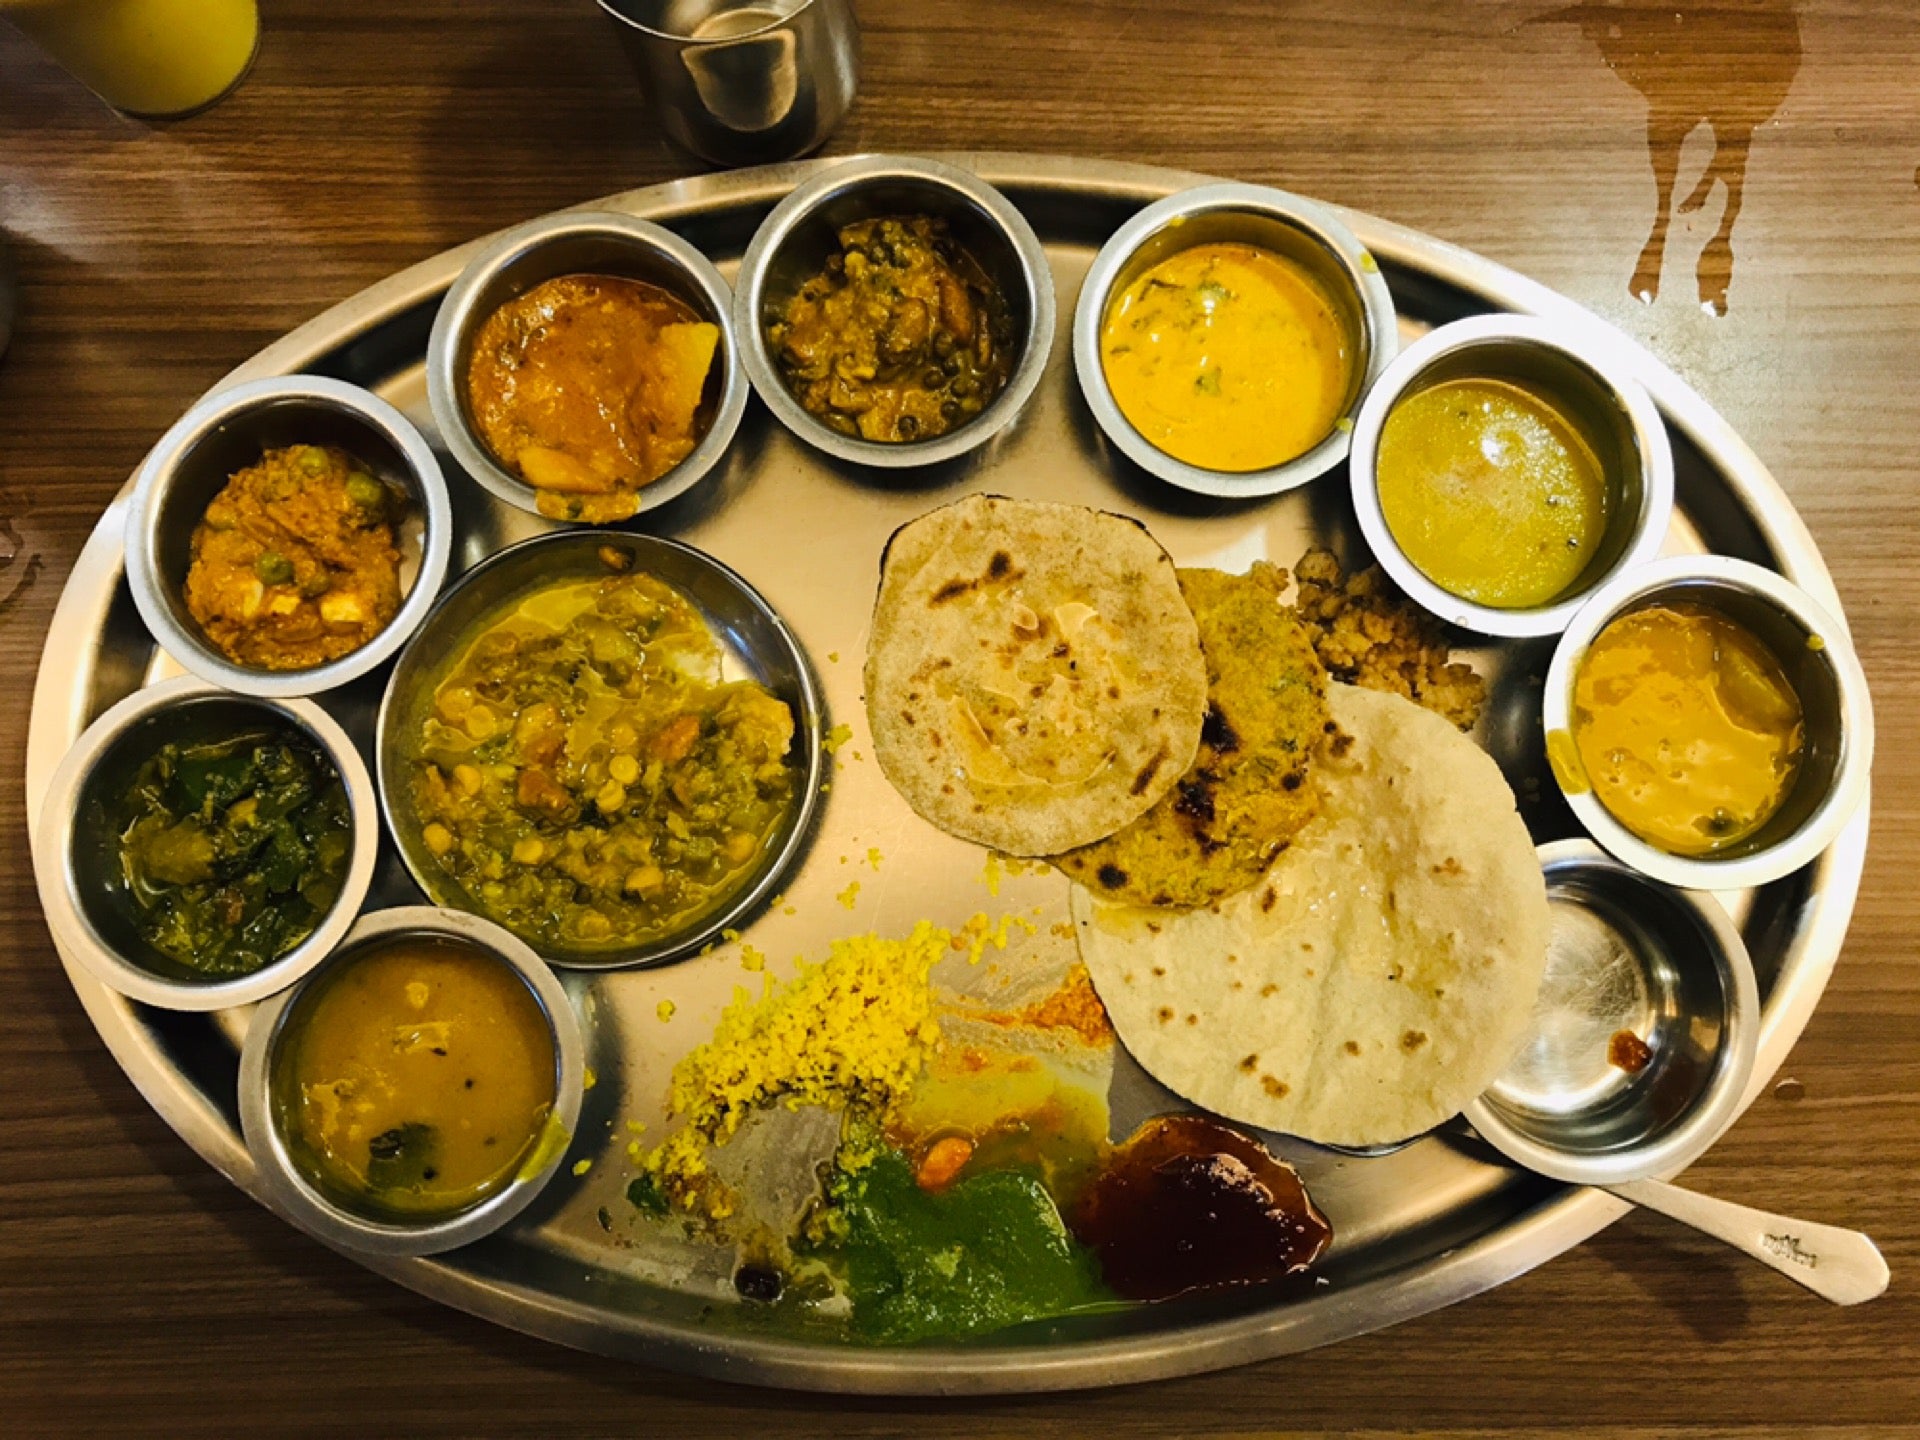 Khandani Rajdhani Restaurant